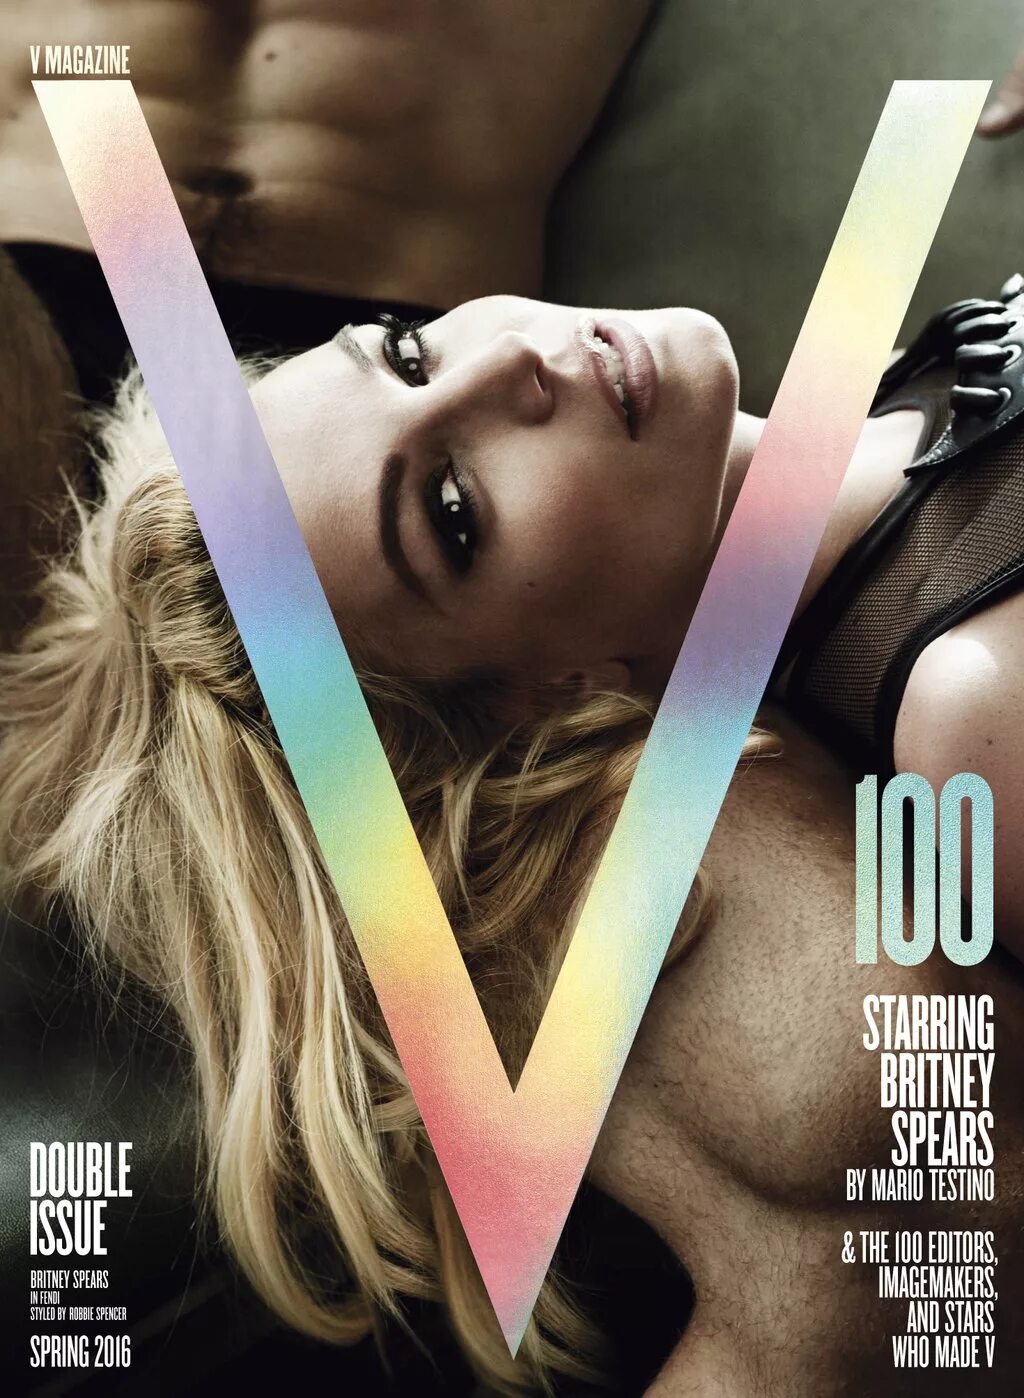 V magazine. Бритни Спирс обложка журнала. Бритни Спирс фотосессия v Magazine. V Magazine журнал обложки. Бритни на обложке журнала v 2016.